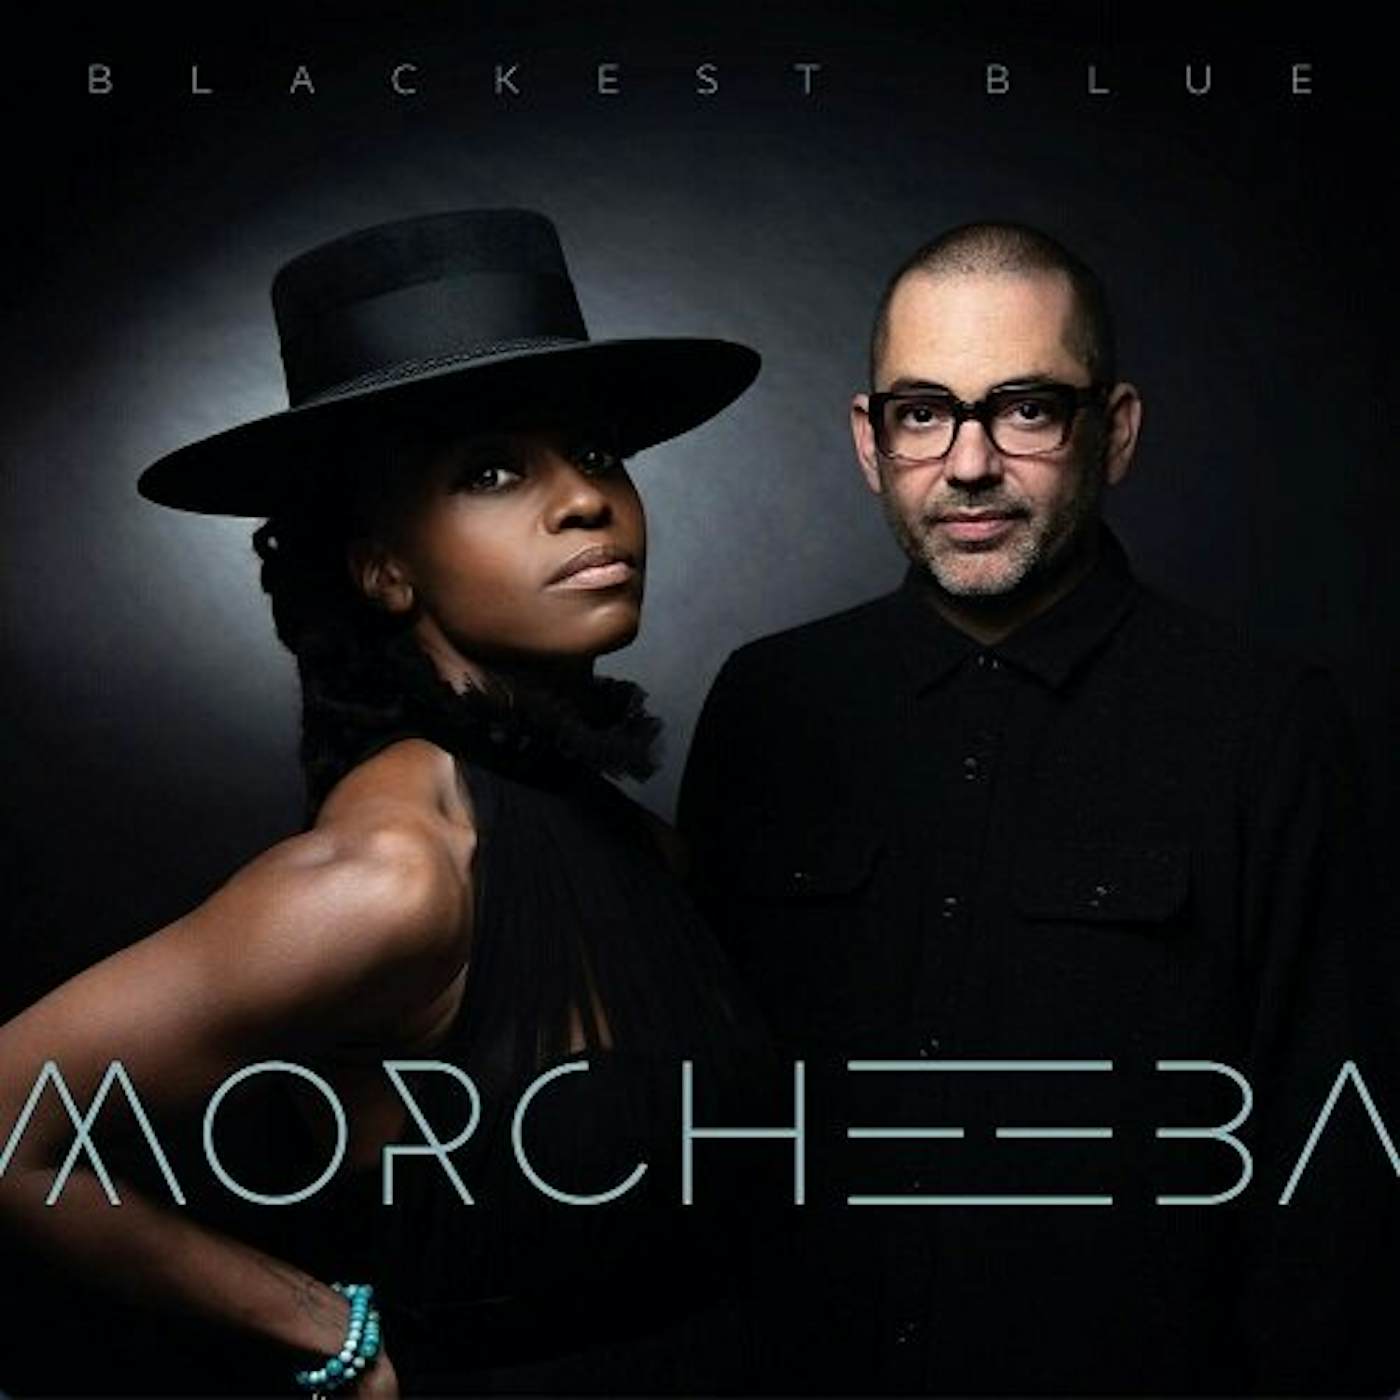 Morcheeba BLACKEST BLUE (Black) Vinyl Record